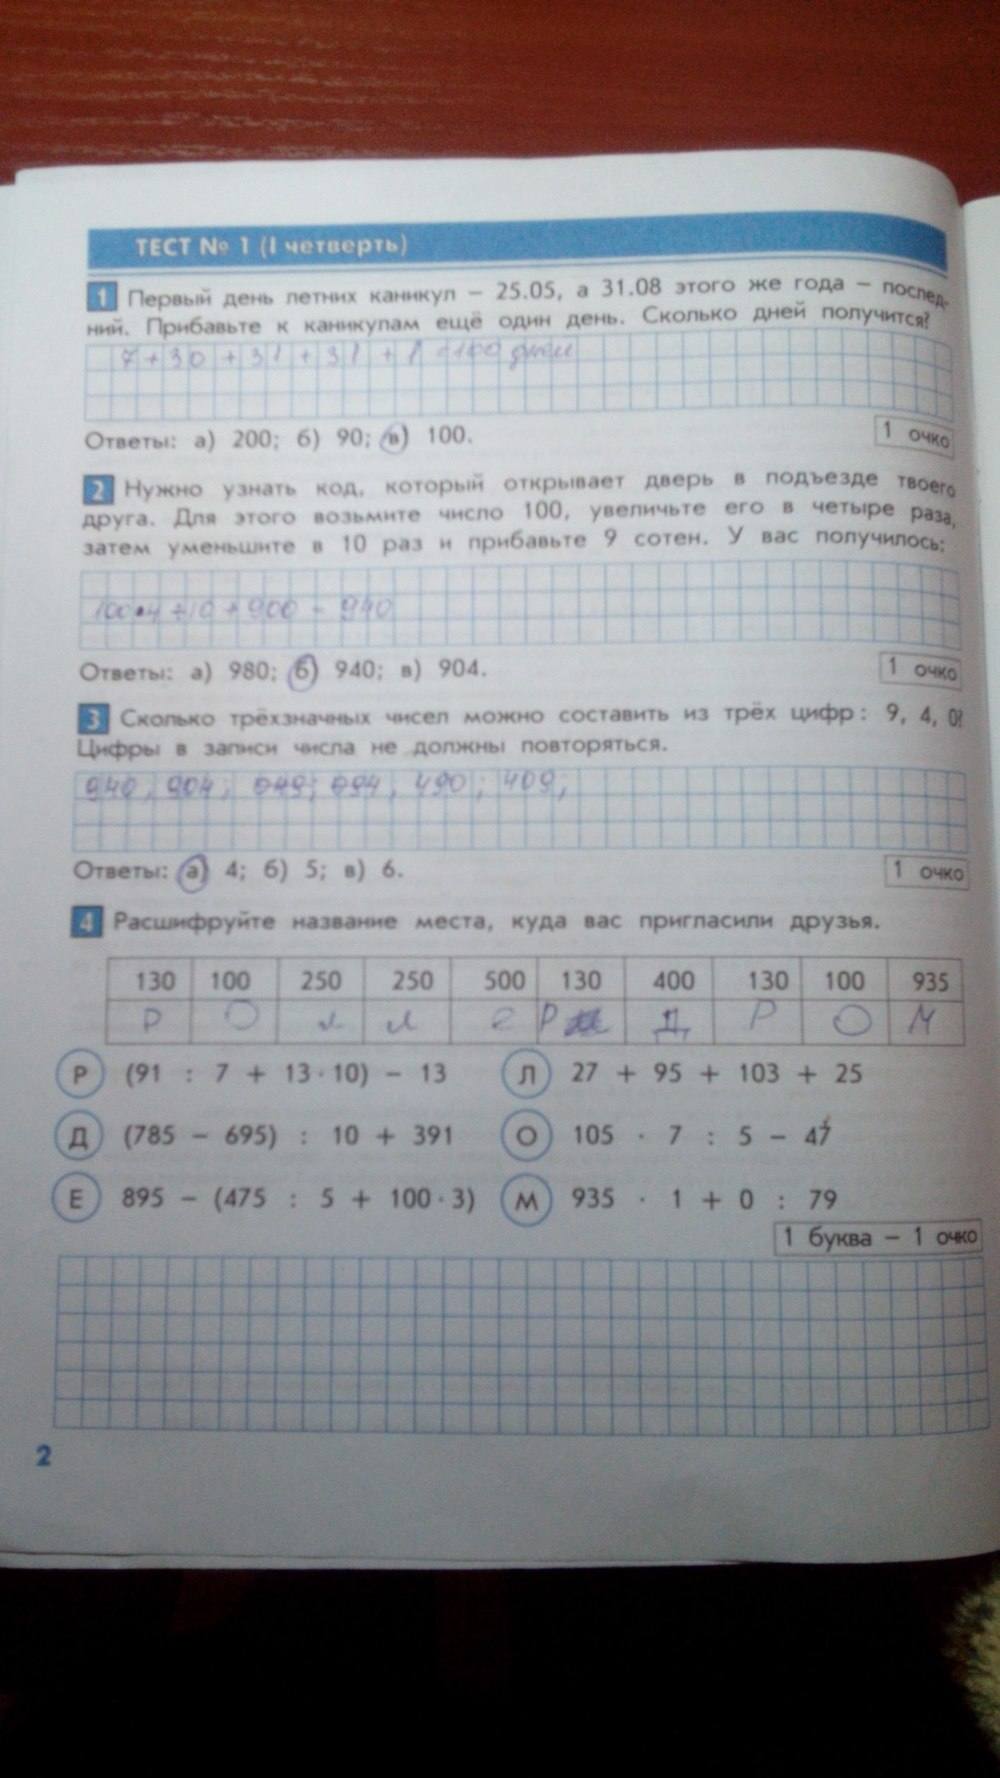 Тесты и контрольные работы, 4 класс, Козлова, Рубин, 2011, задание: стр. 2